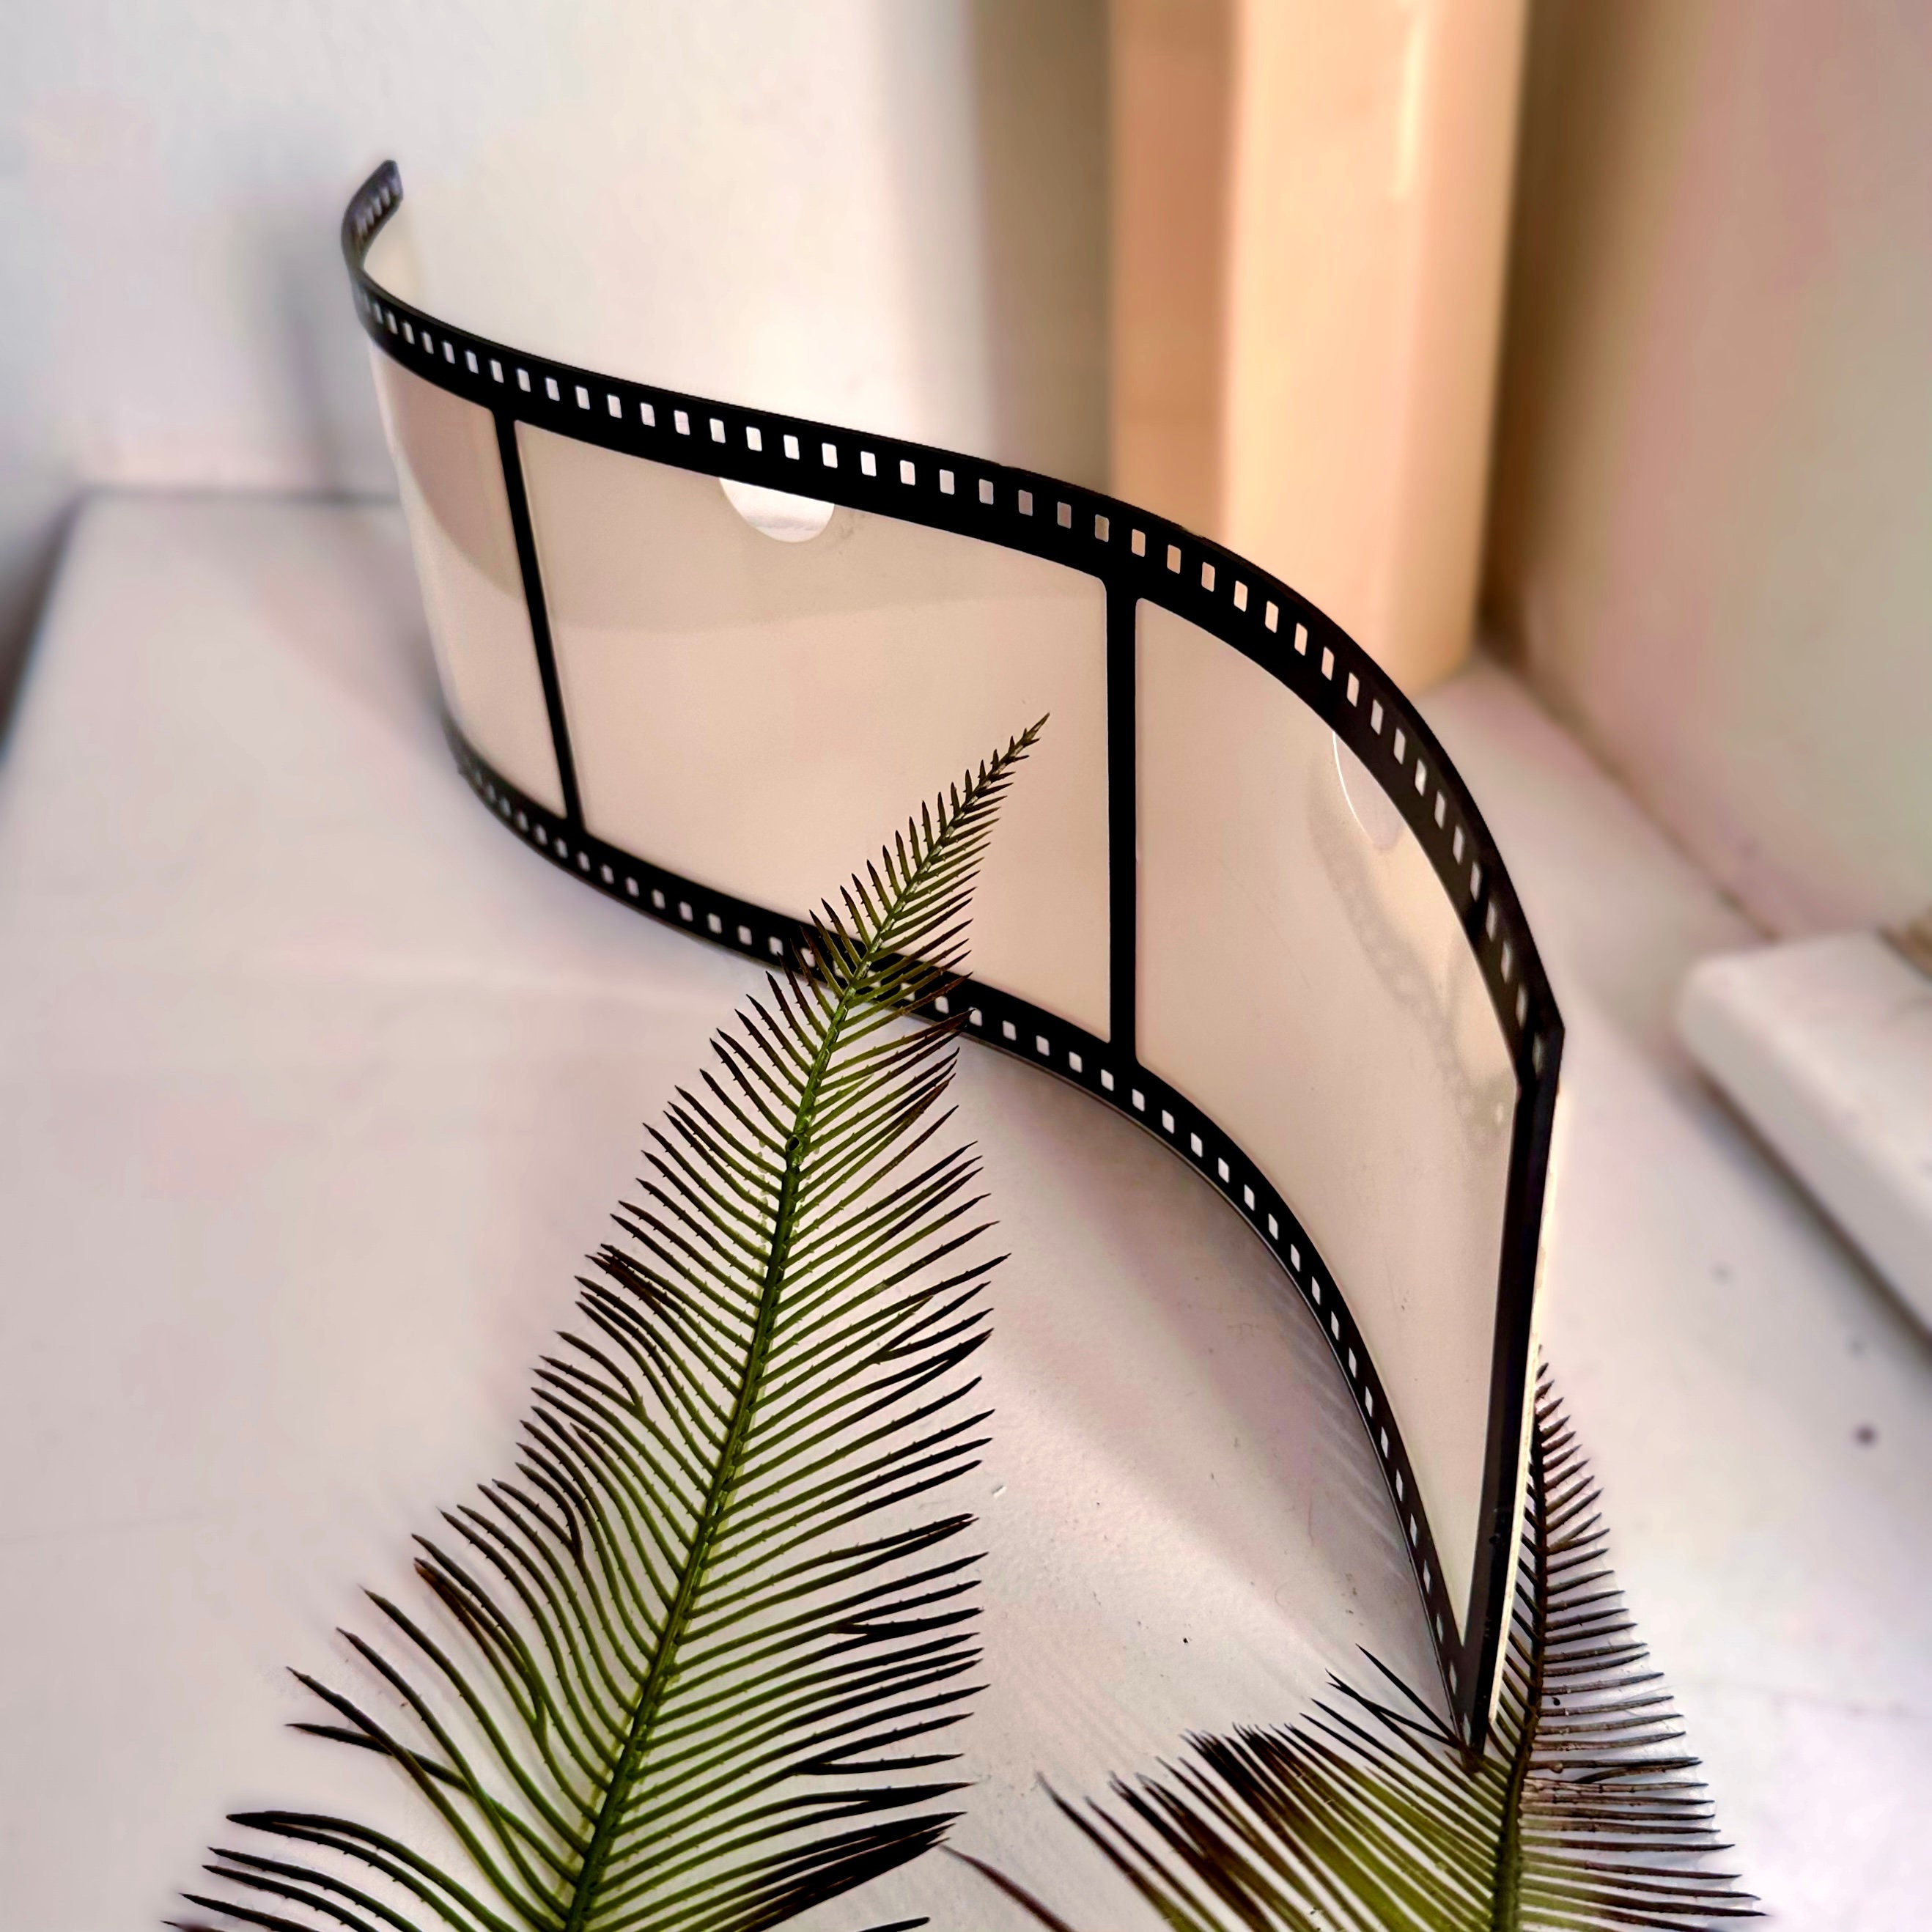 Film Reel Display 